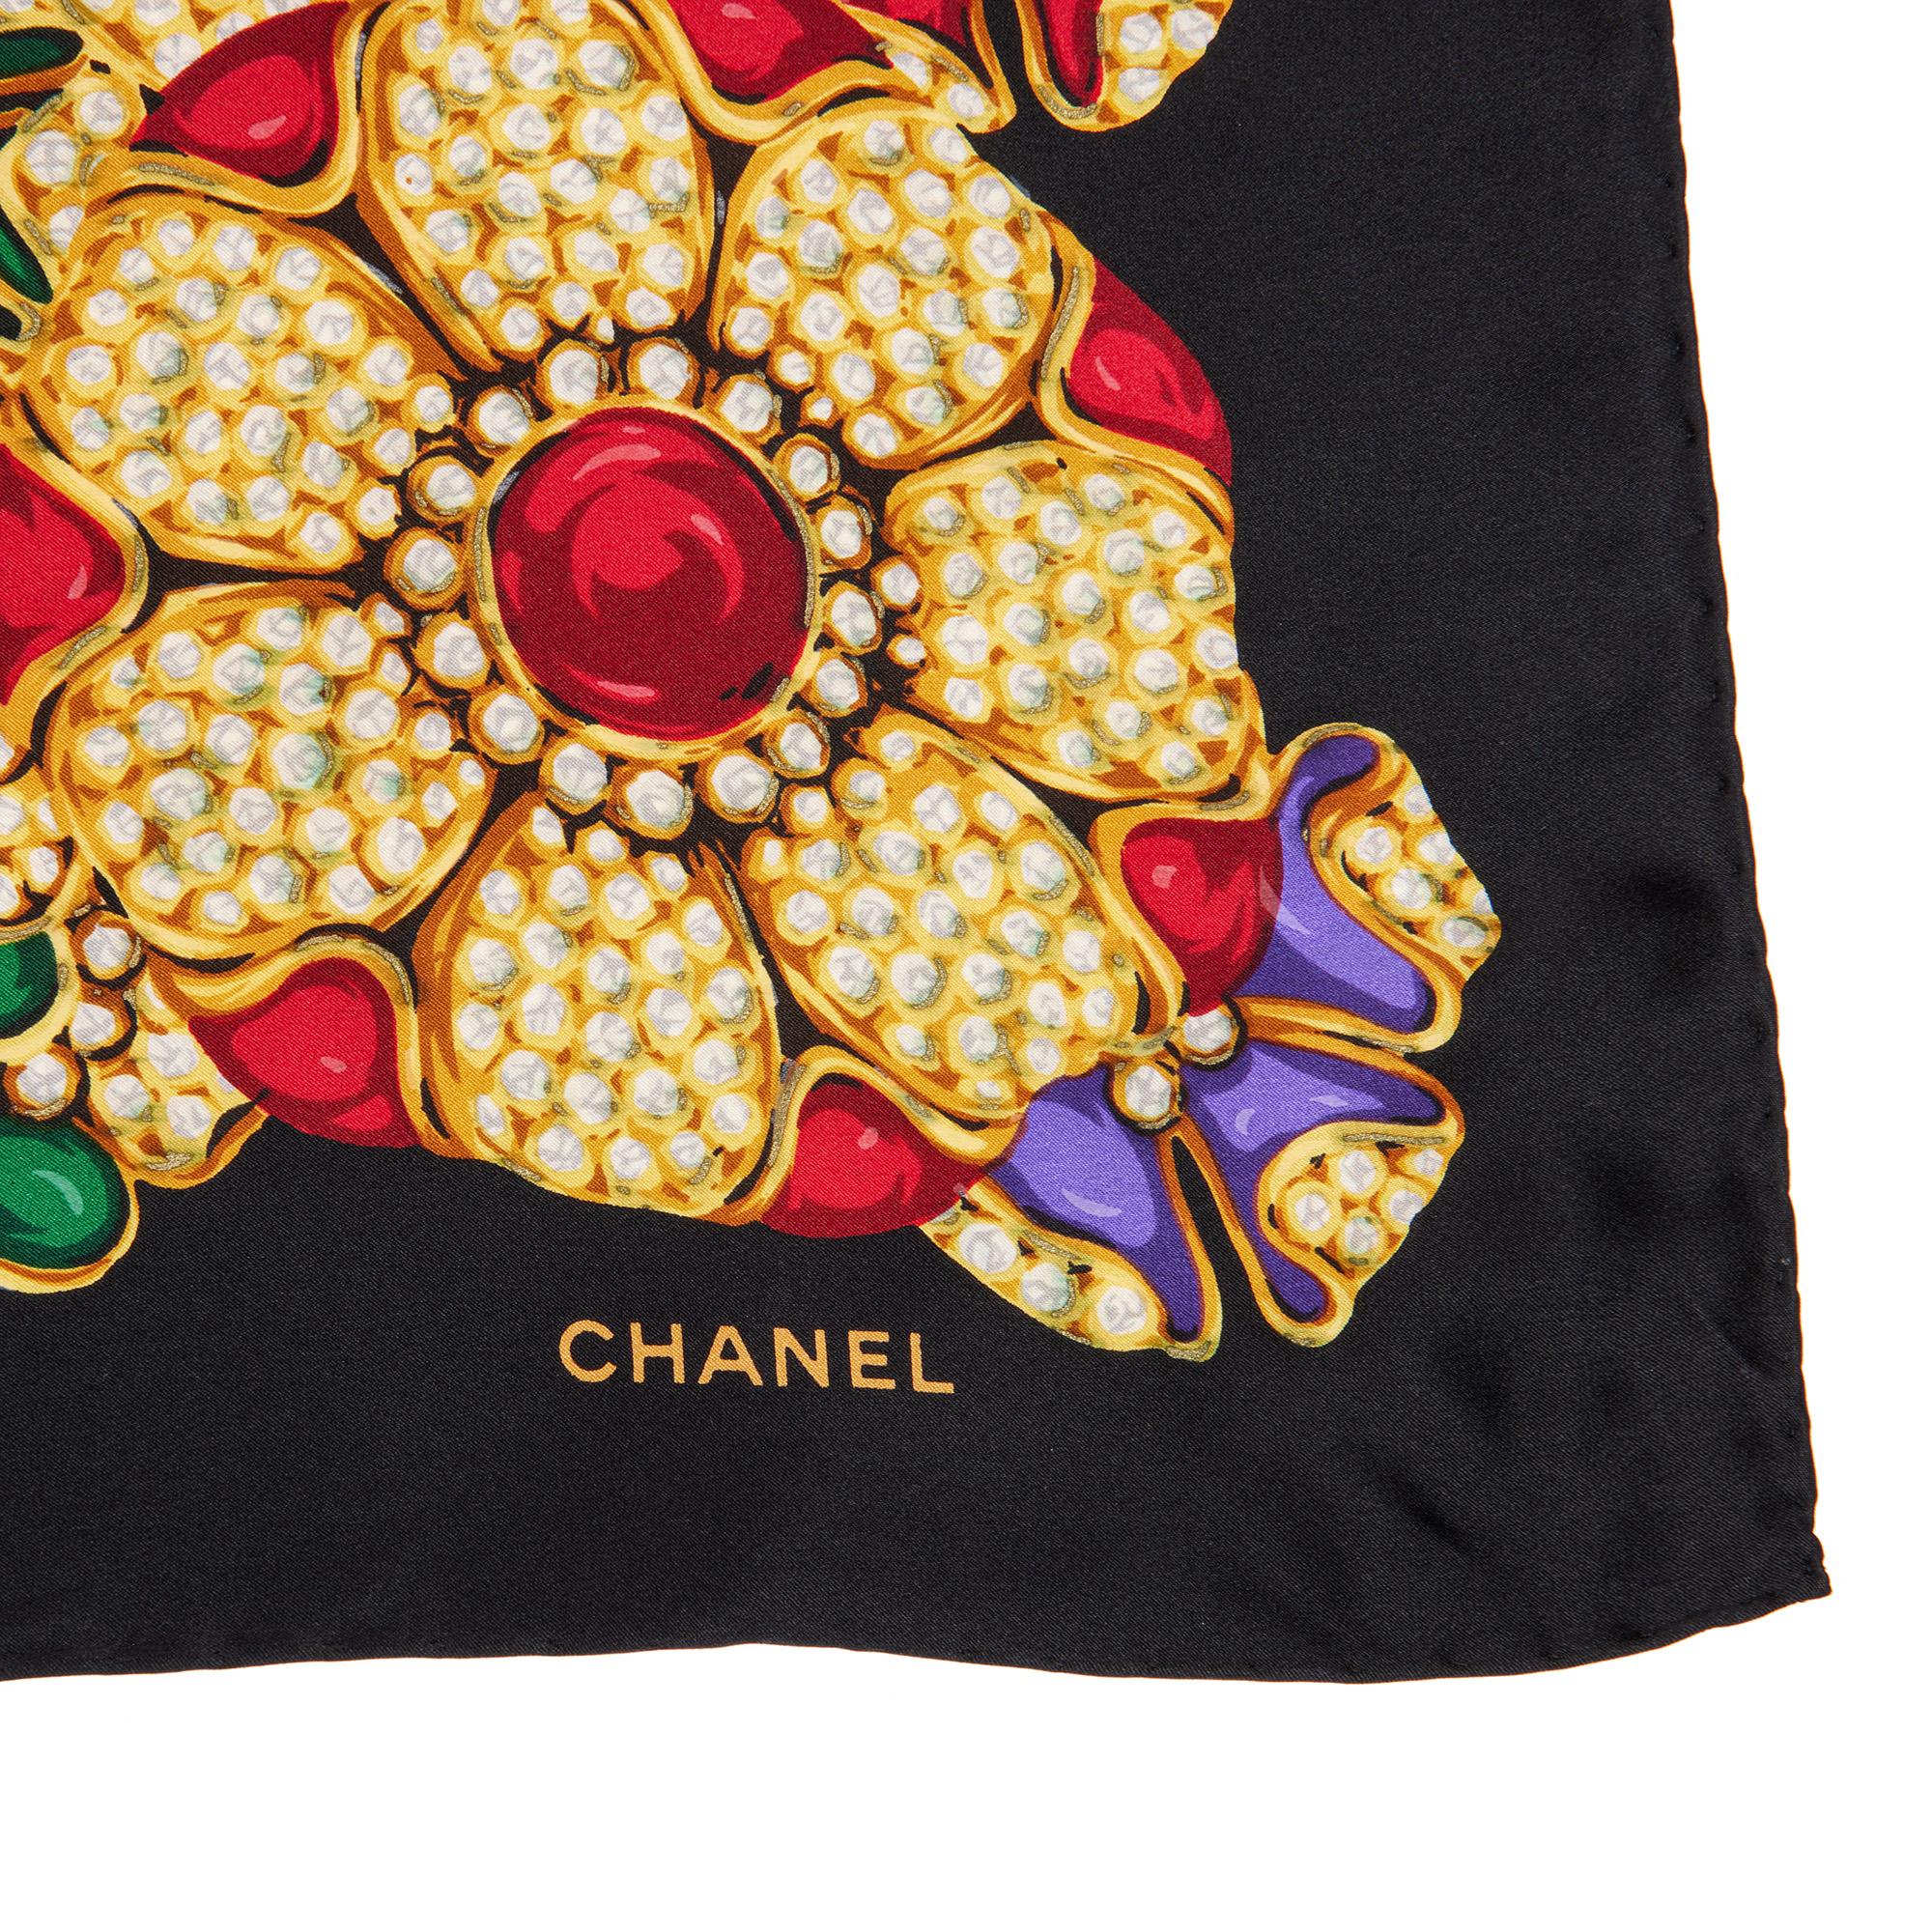 Chanel - Echarpe en soie noire, rouge, violette et verte à fleurs Vintage

NOTES D'ÉTAT
Le matériel est en excellent état avec de légers signes d'utilisation.
Dans l'ensemble, cet article est en excellent état d'occasion. Veuillez noter que la